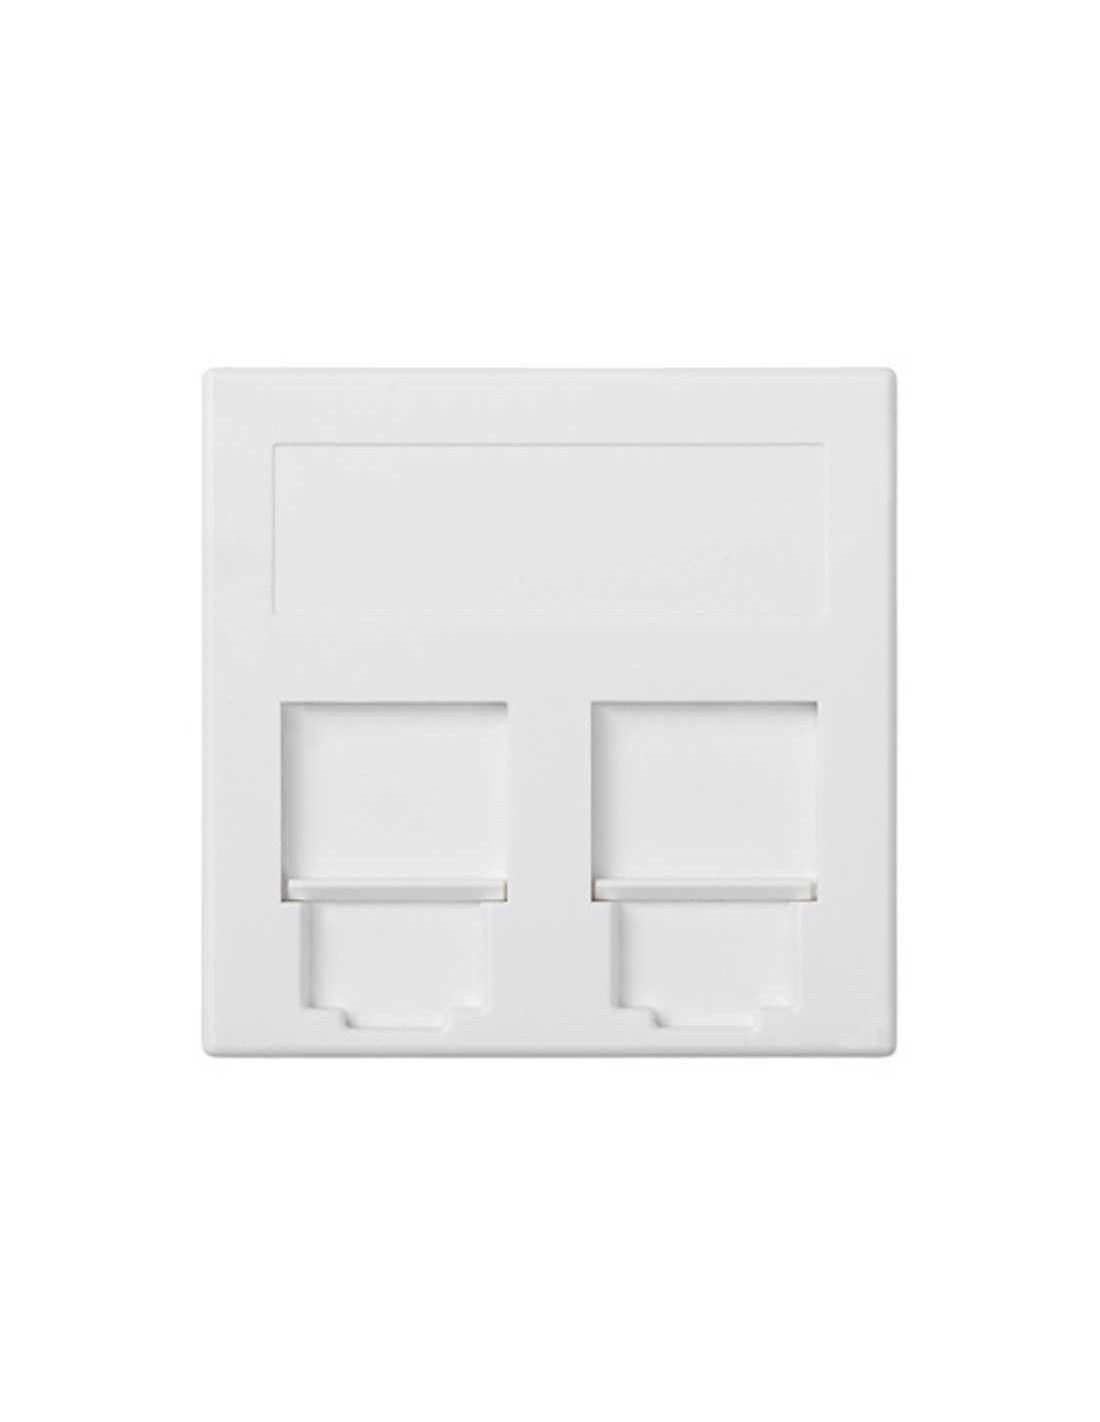 Kit caja pared de 3 elementos con 1 enchufe doble,1 SAI doble y 2 placas  1RJ45 blanco Simon 500 Cima